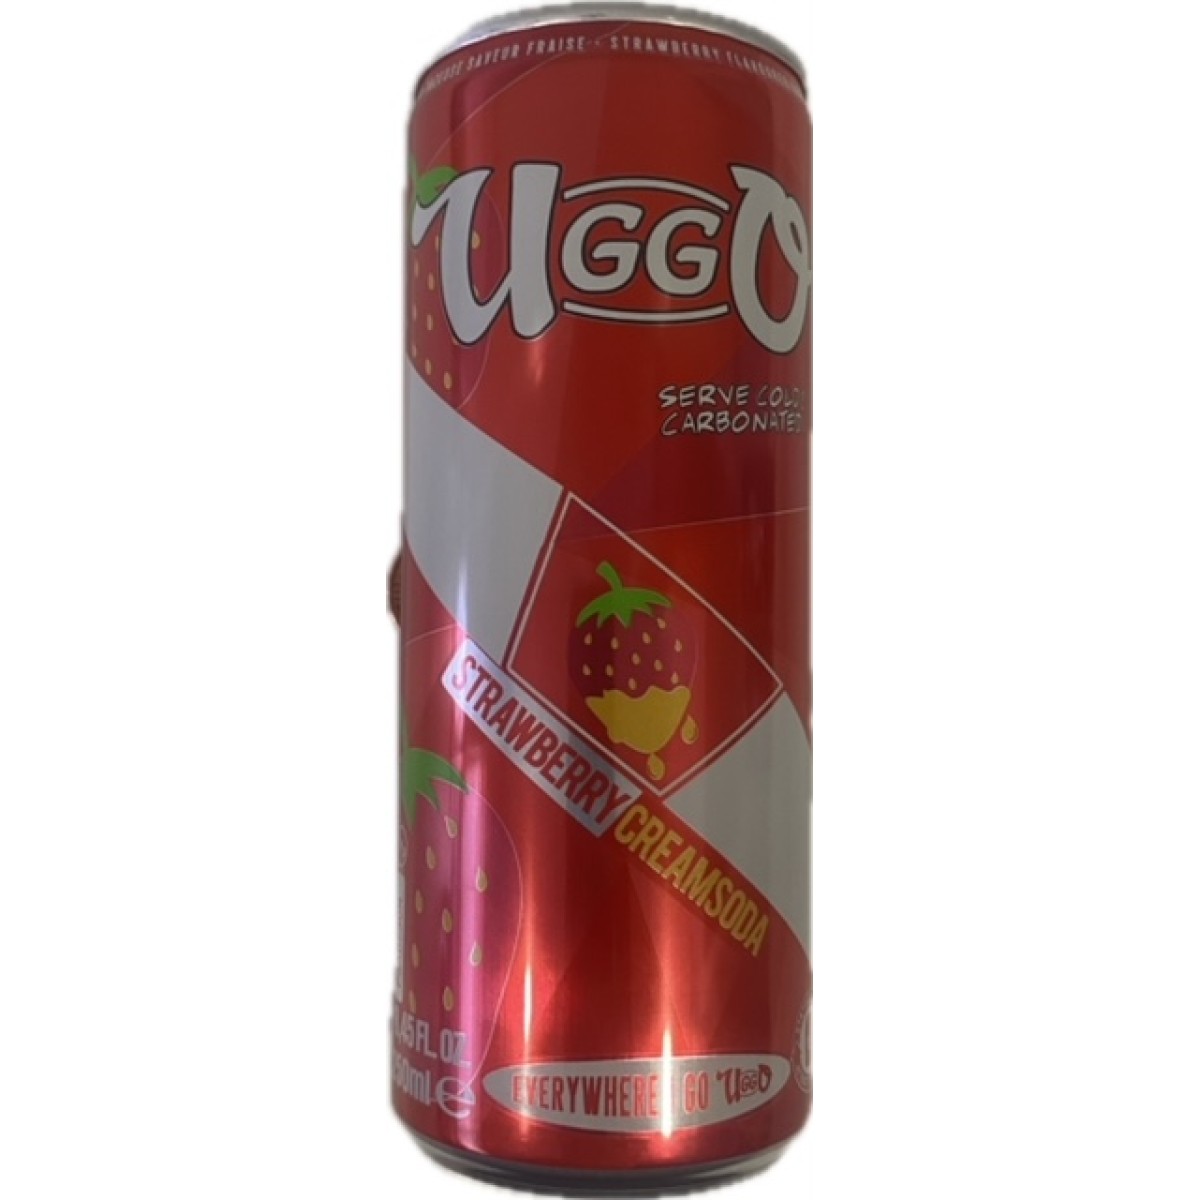 Uggu strawberry creamsoda